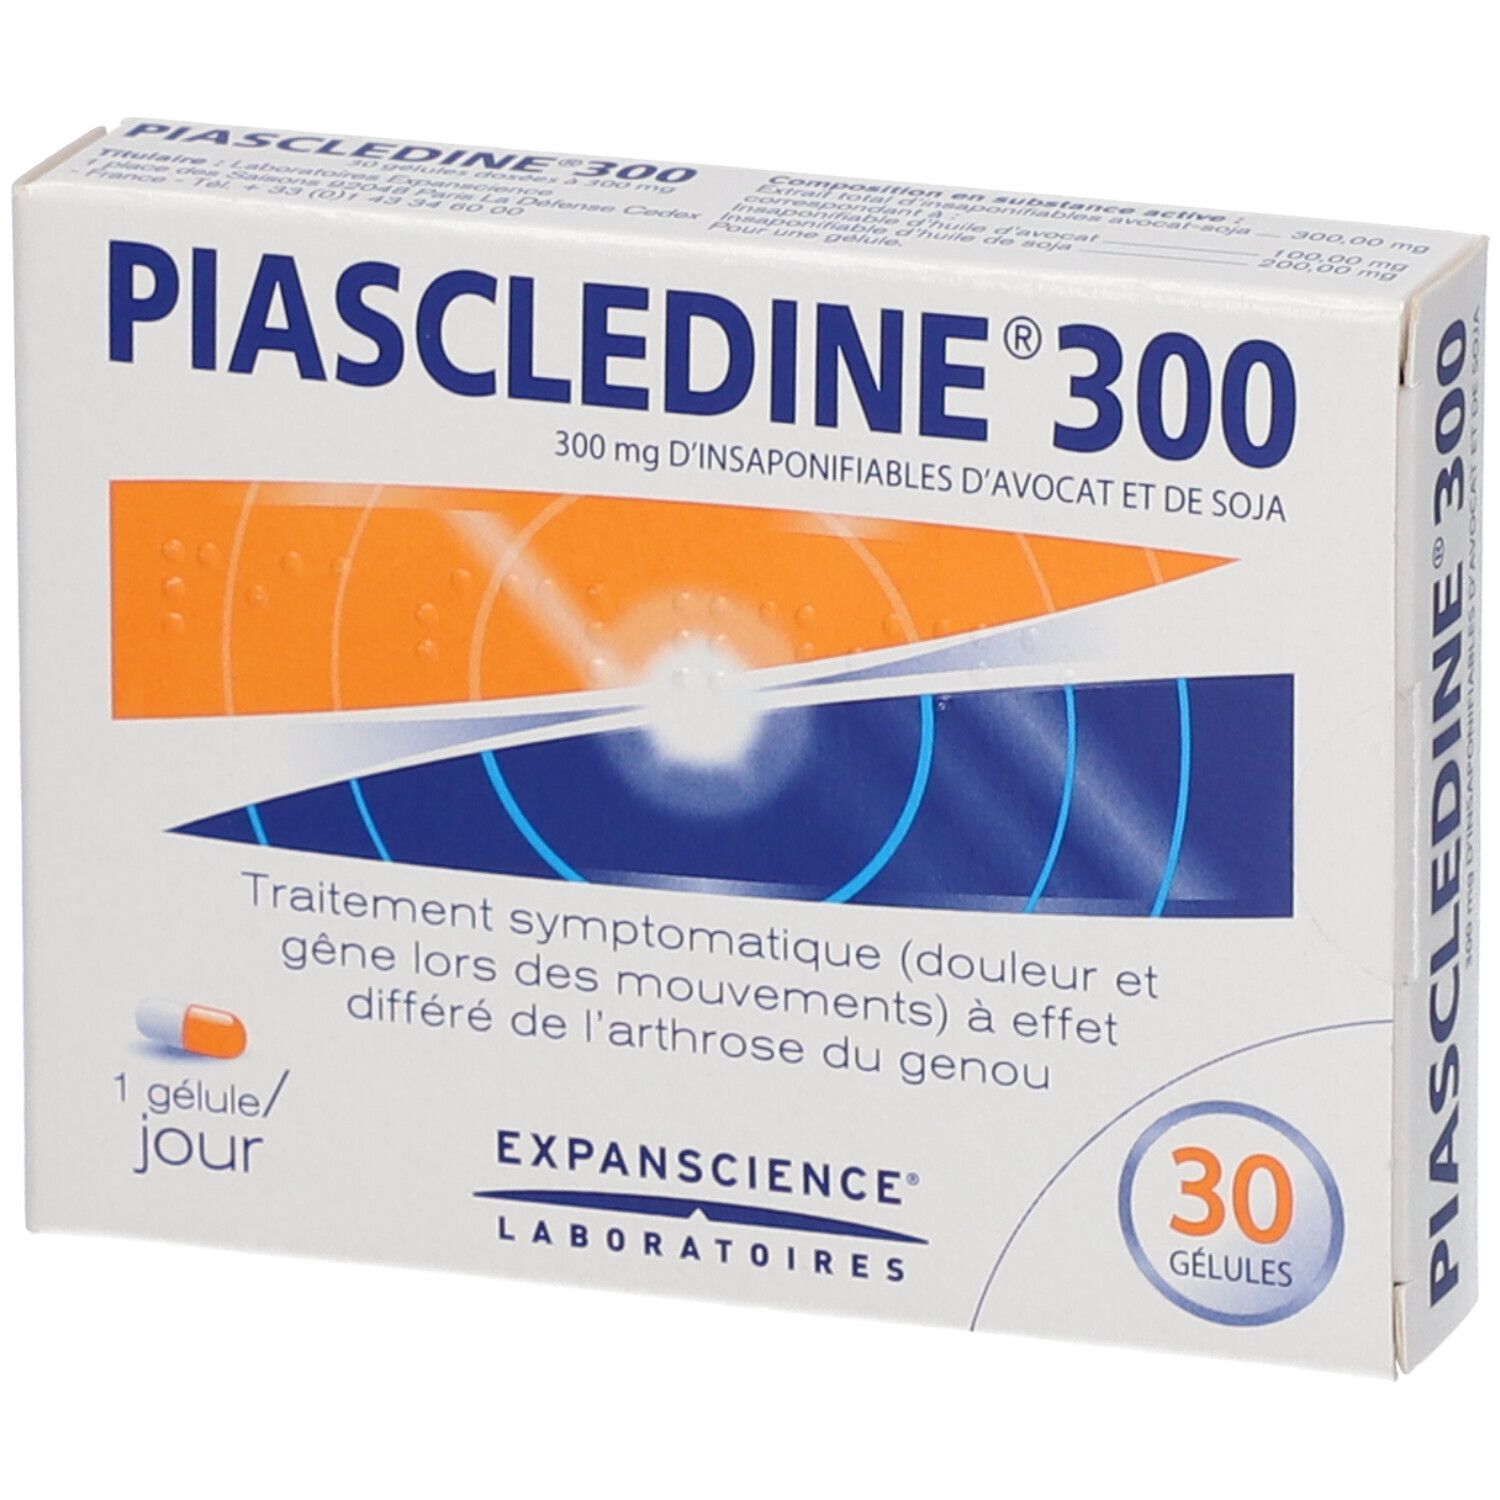 Piascledine® 300 mg